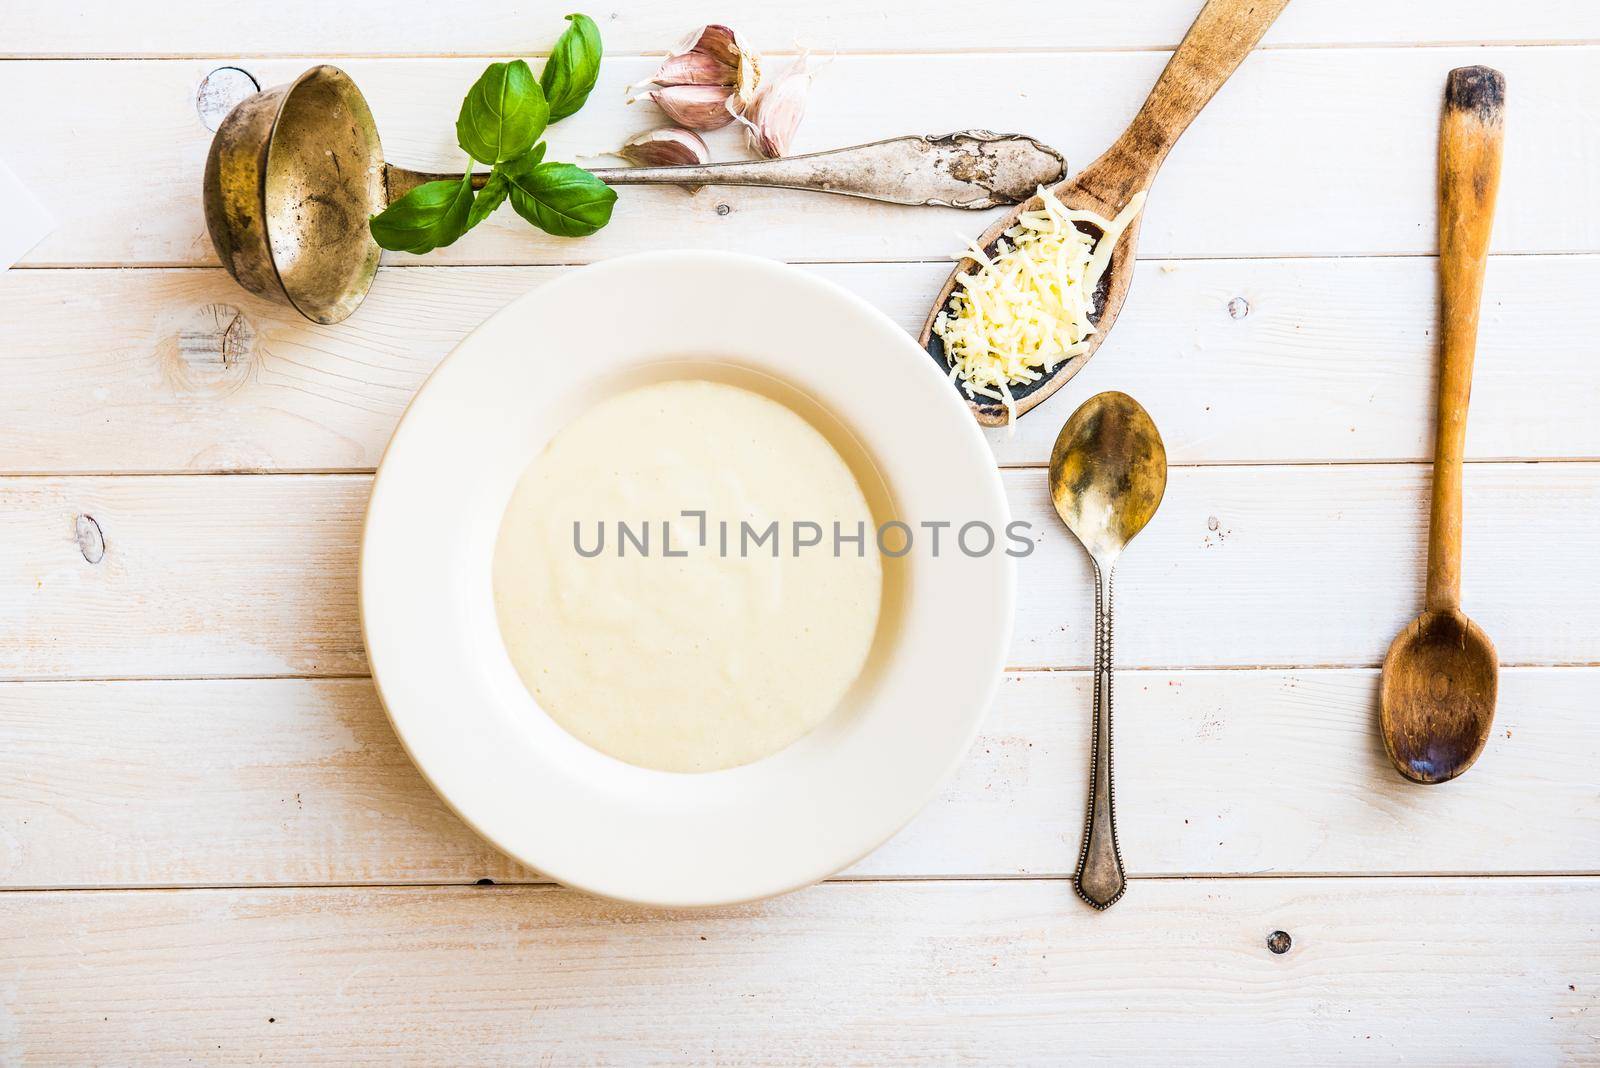 onion soup by GekaSkr